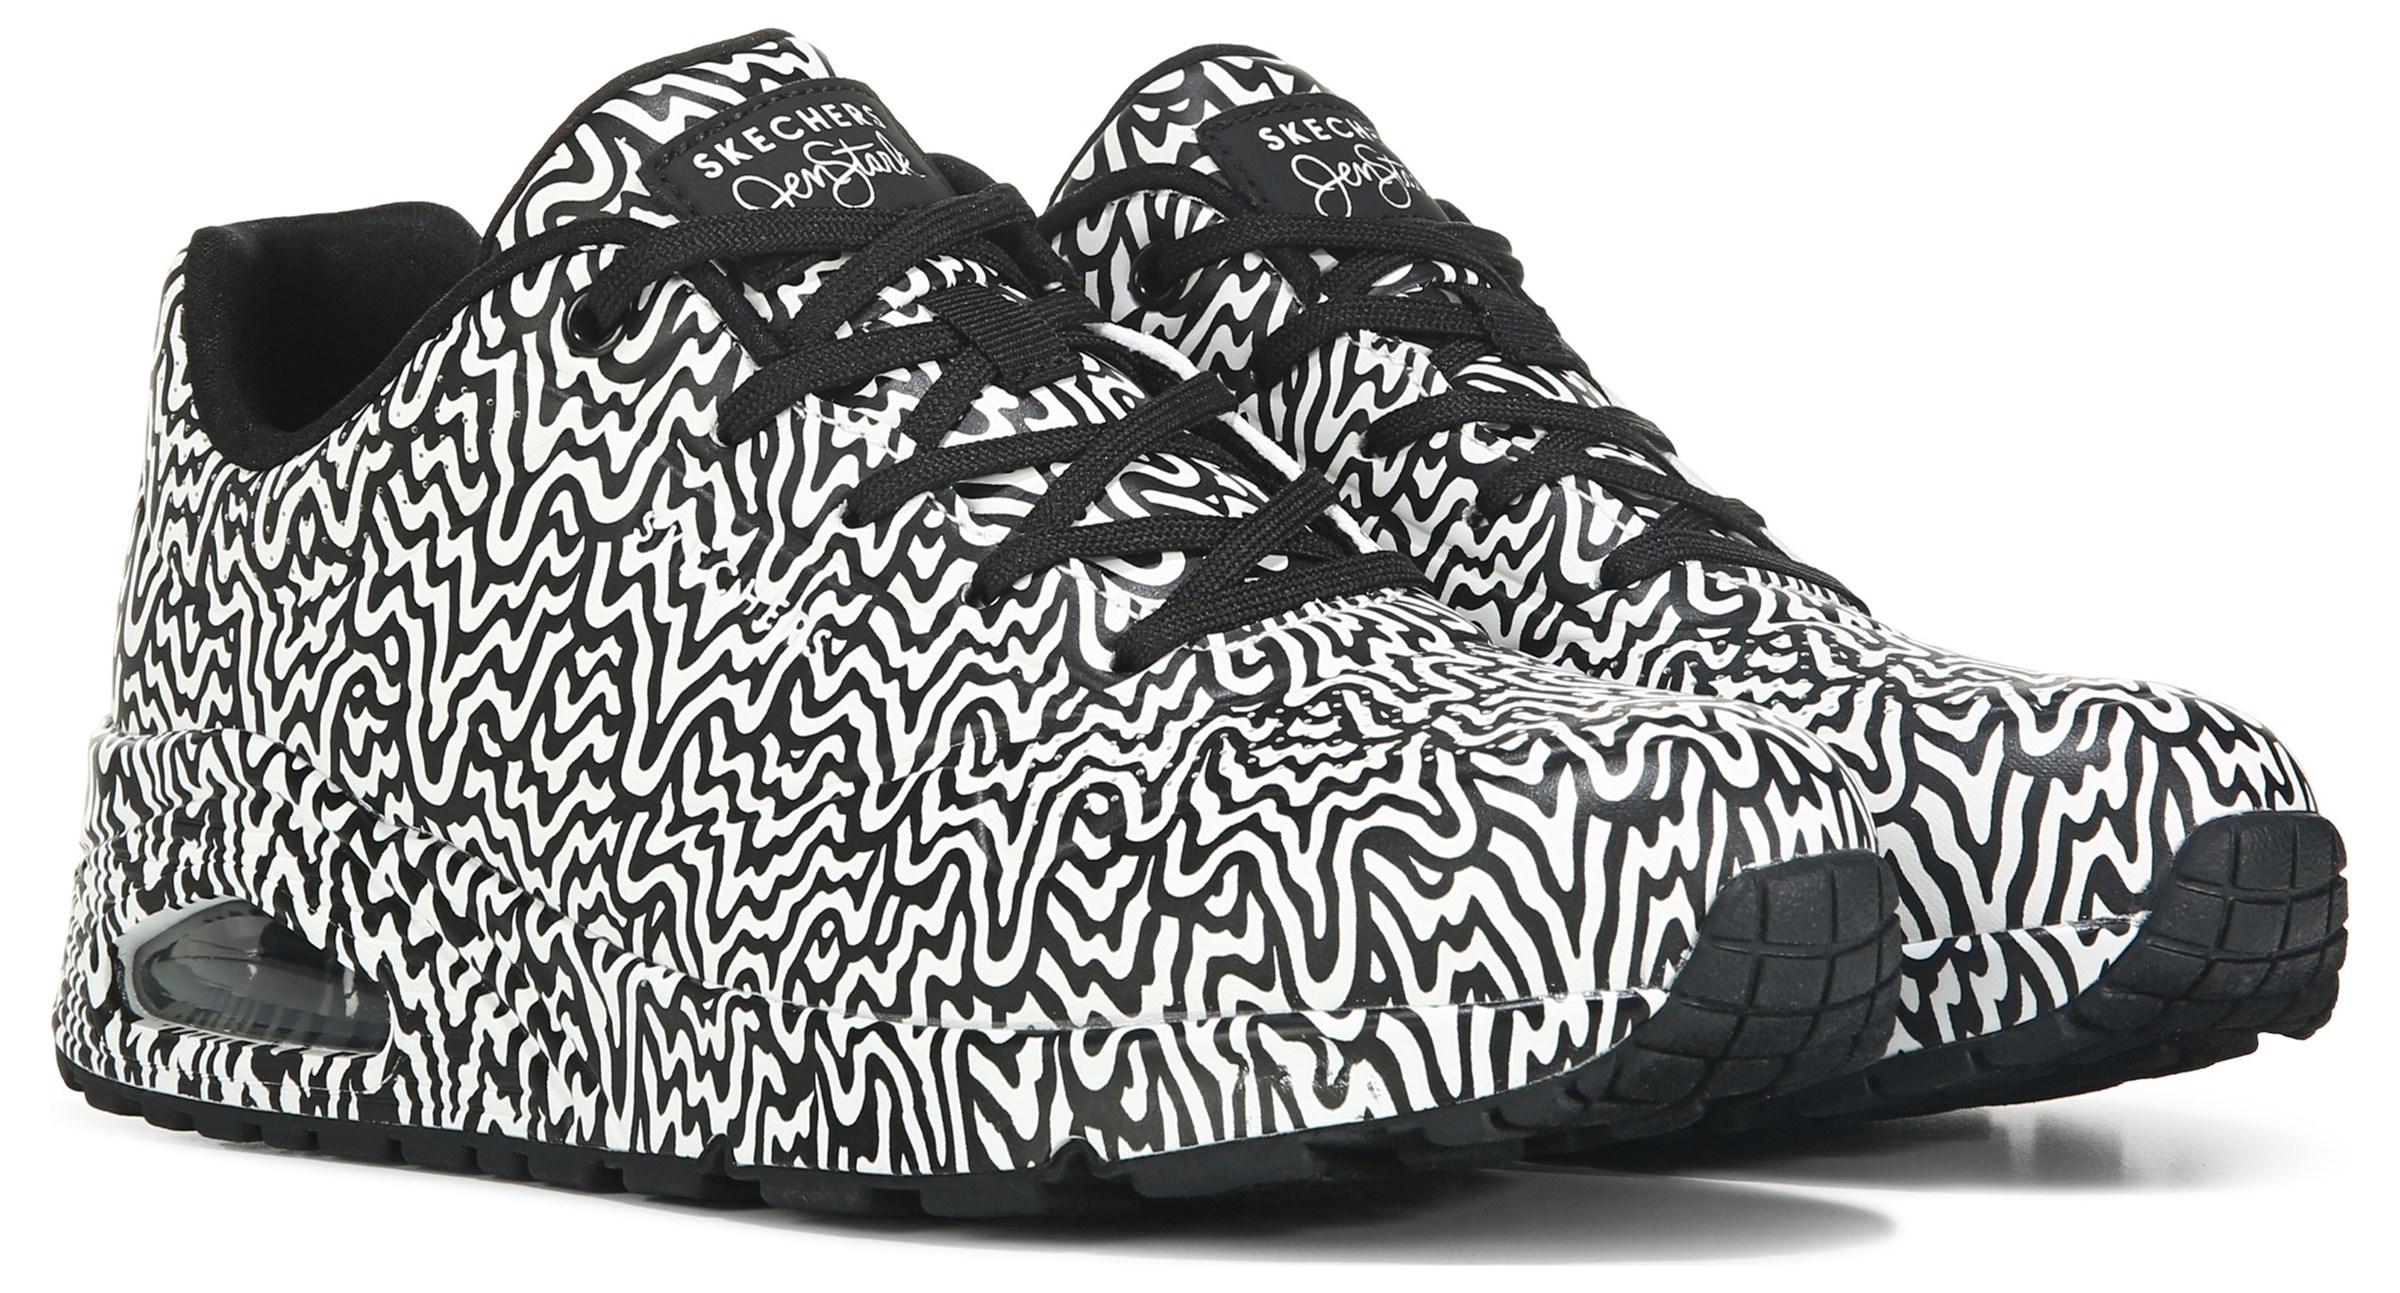 Skechers Art. UNO Sneakers in black buy online